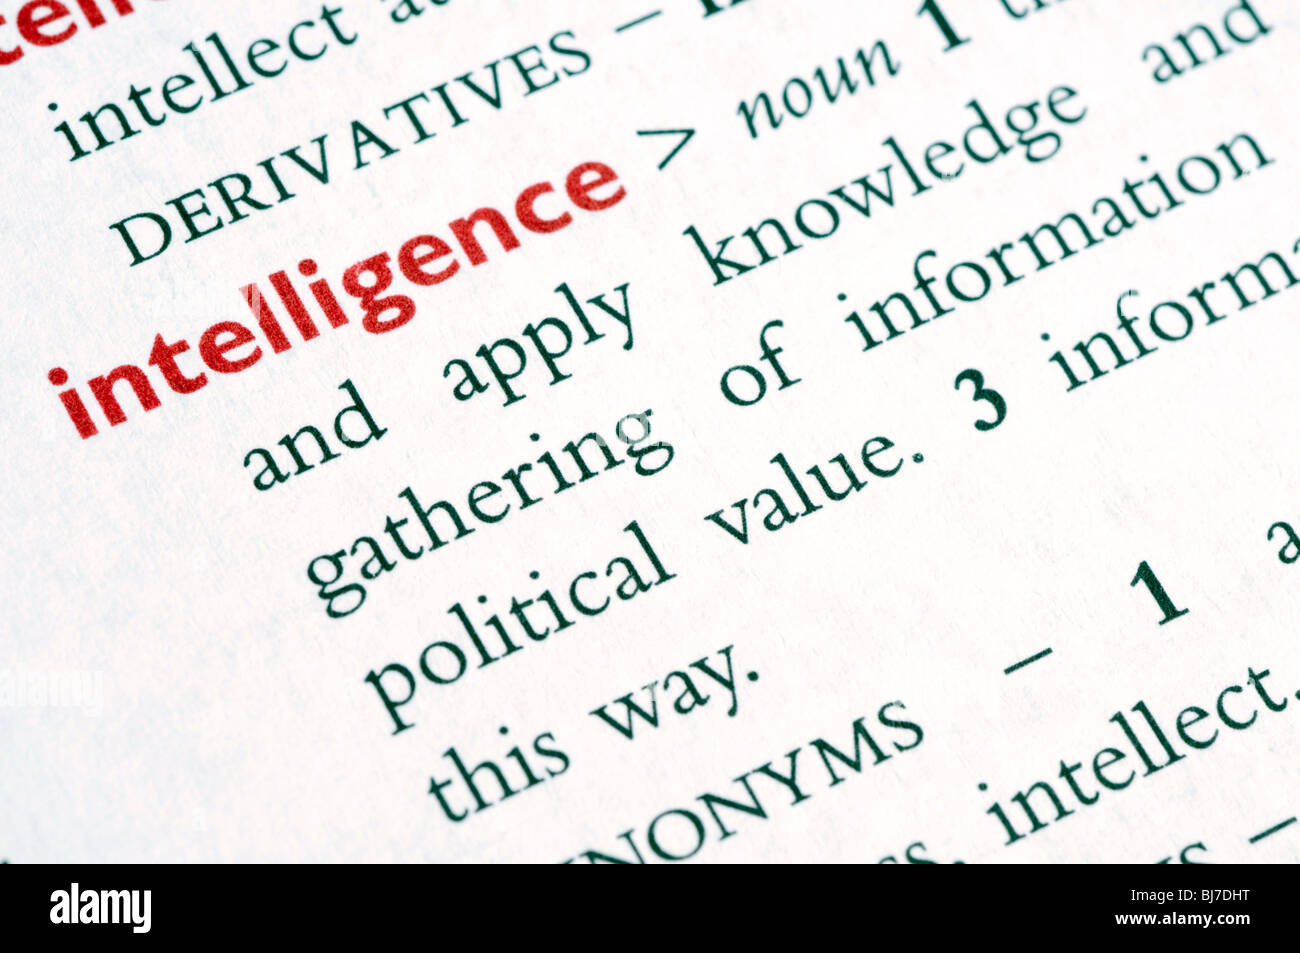 Wörterbuch-Definition des Wortes "Intelligenz" Stockfoto